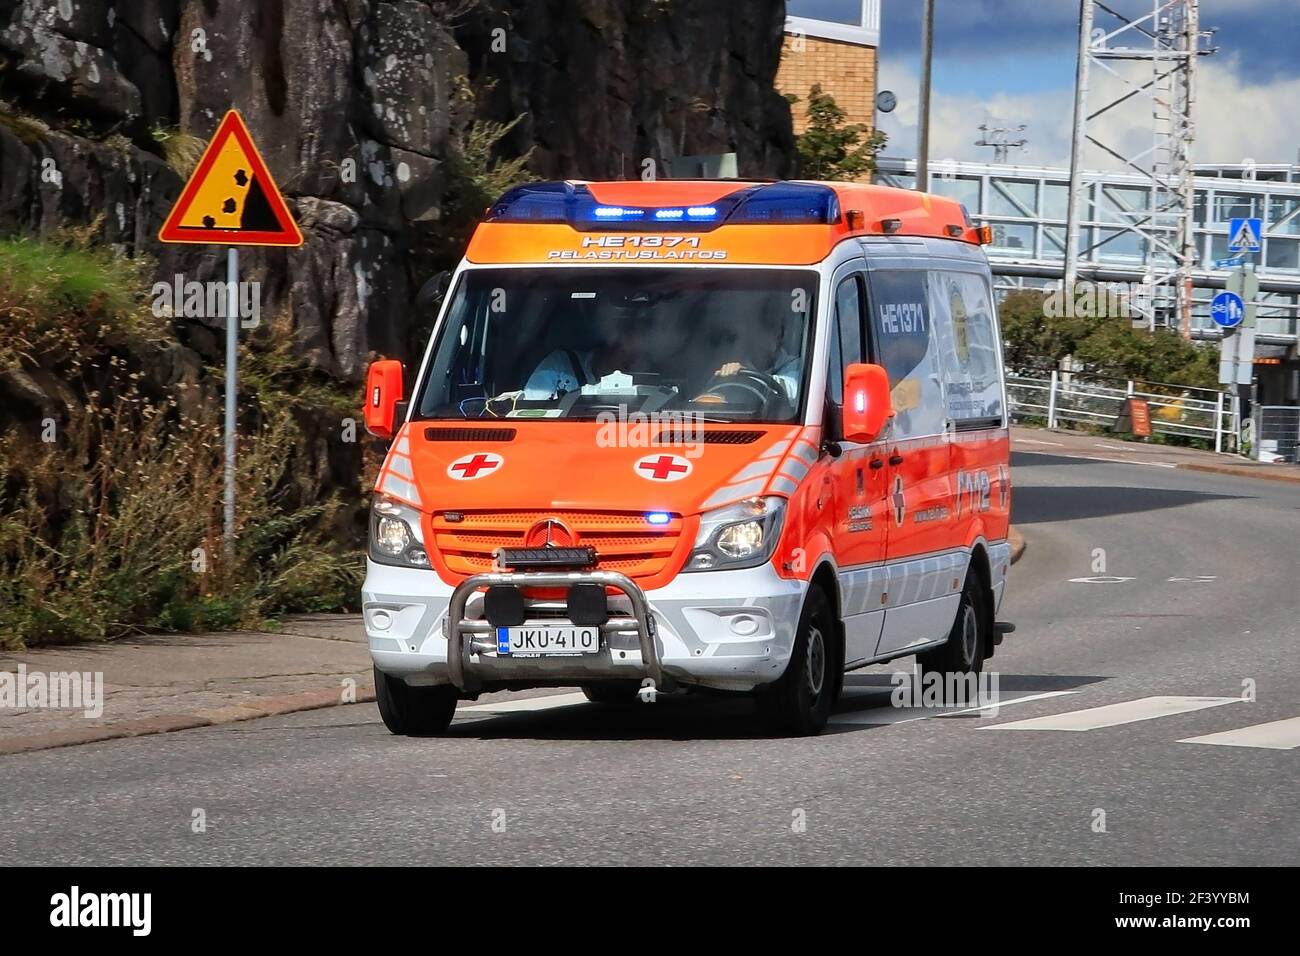 Véhicule d'urgence ambulancier en cas d'appel d'urgence roulant dans la rue pendant la journée. Détail : panneau de signalisation routière Falling Rocks. Helsinki, Finlande. 24 août 20. Banque D'Images